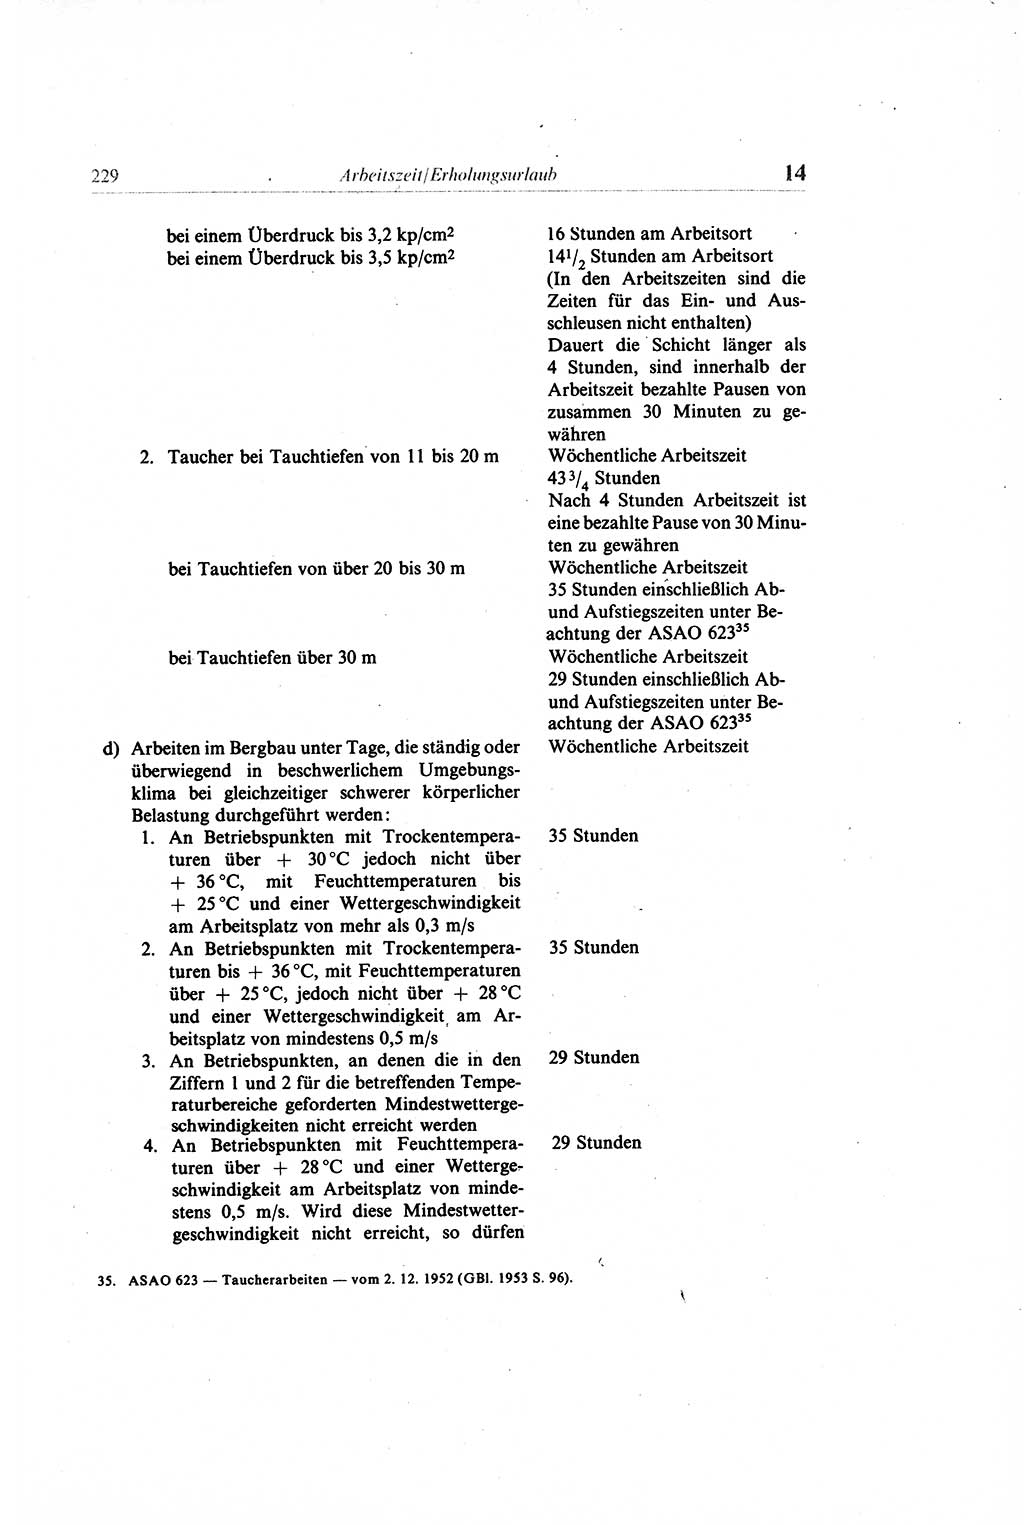 Gesetzbuch der Arbeit (GBA) und andere ausgewählte rechtliche Bestimmungen [Deutsche Demokratische Republik (DDR)] 1968, Seite 229 (GBA DDR 1968, S. 229)